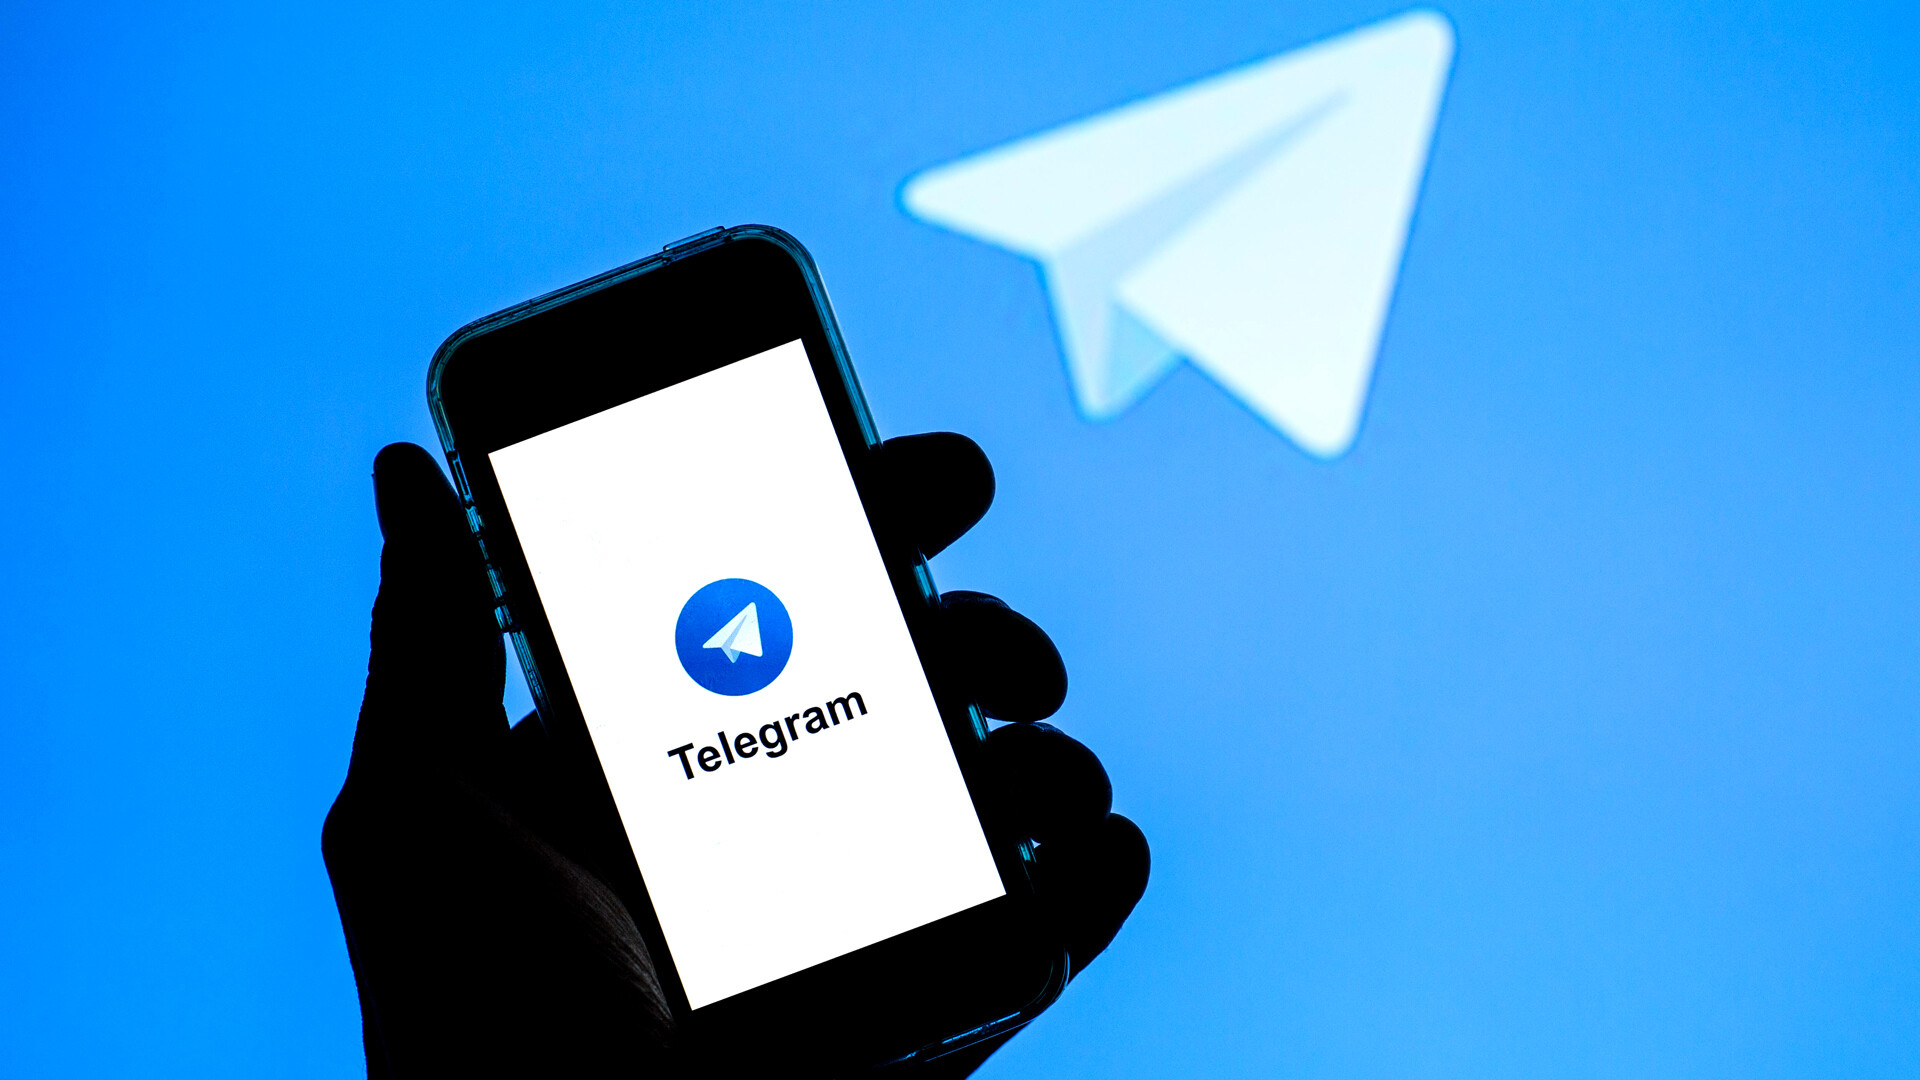 Скачать приложение телеграмм на русском на андроид бесплатно и установить без рекламы фото 106